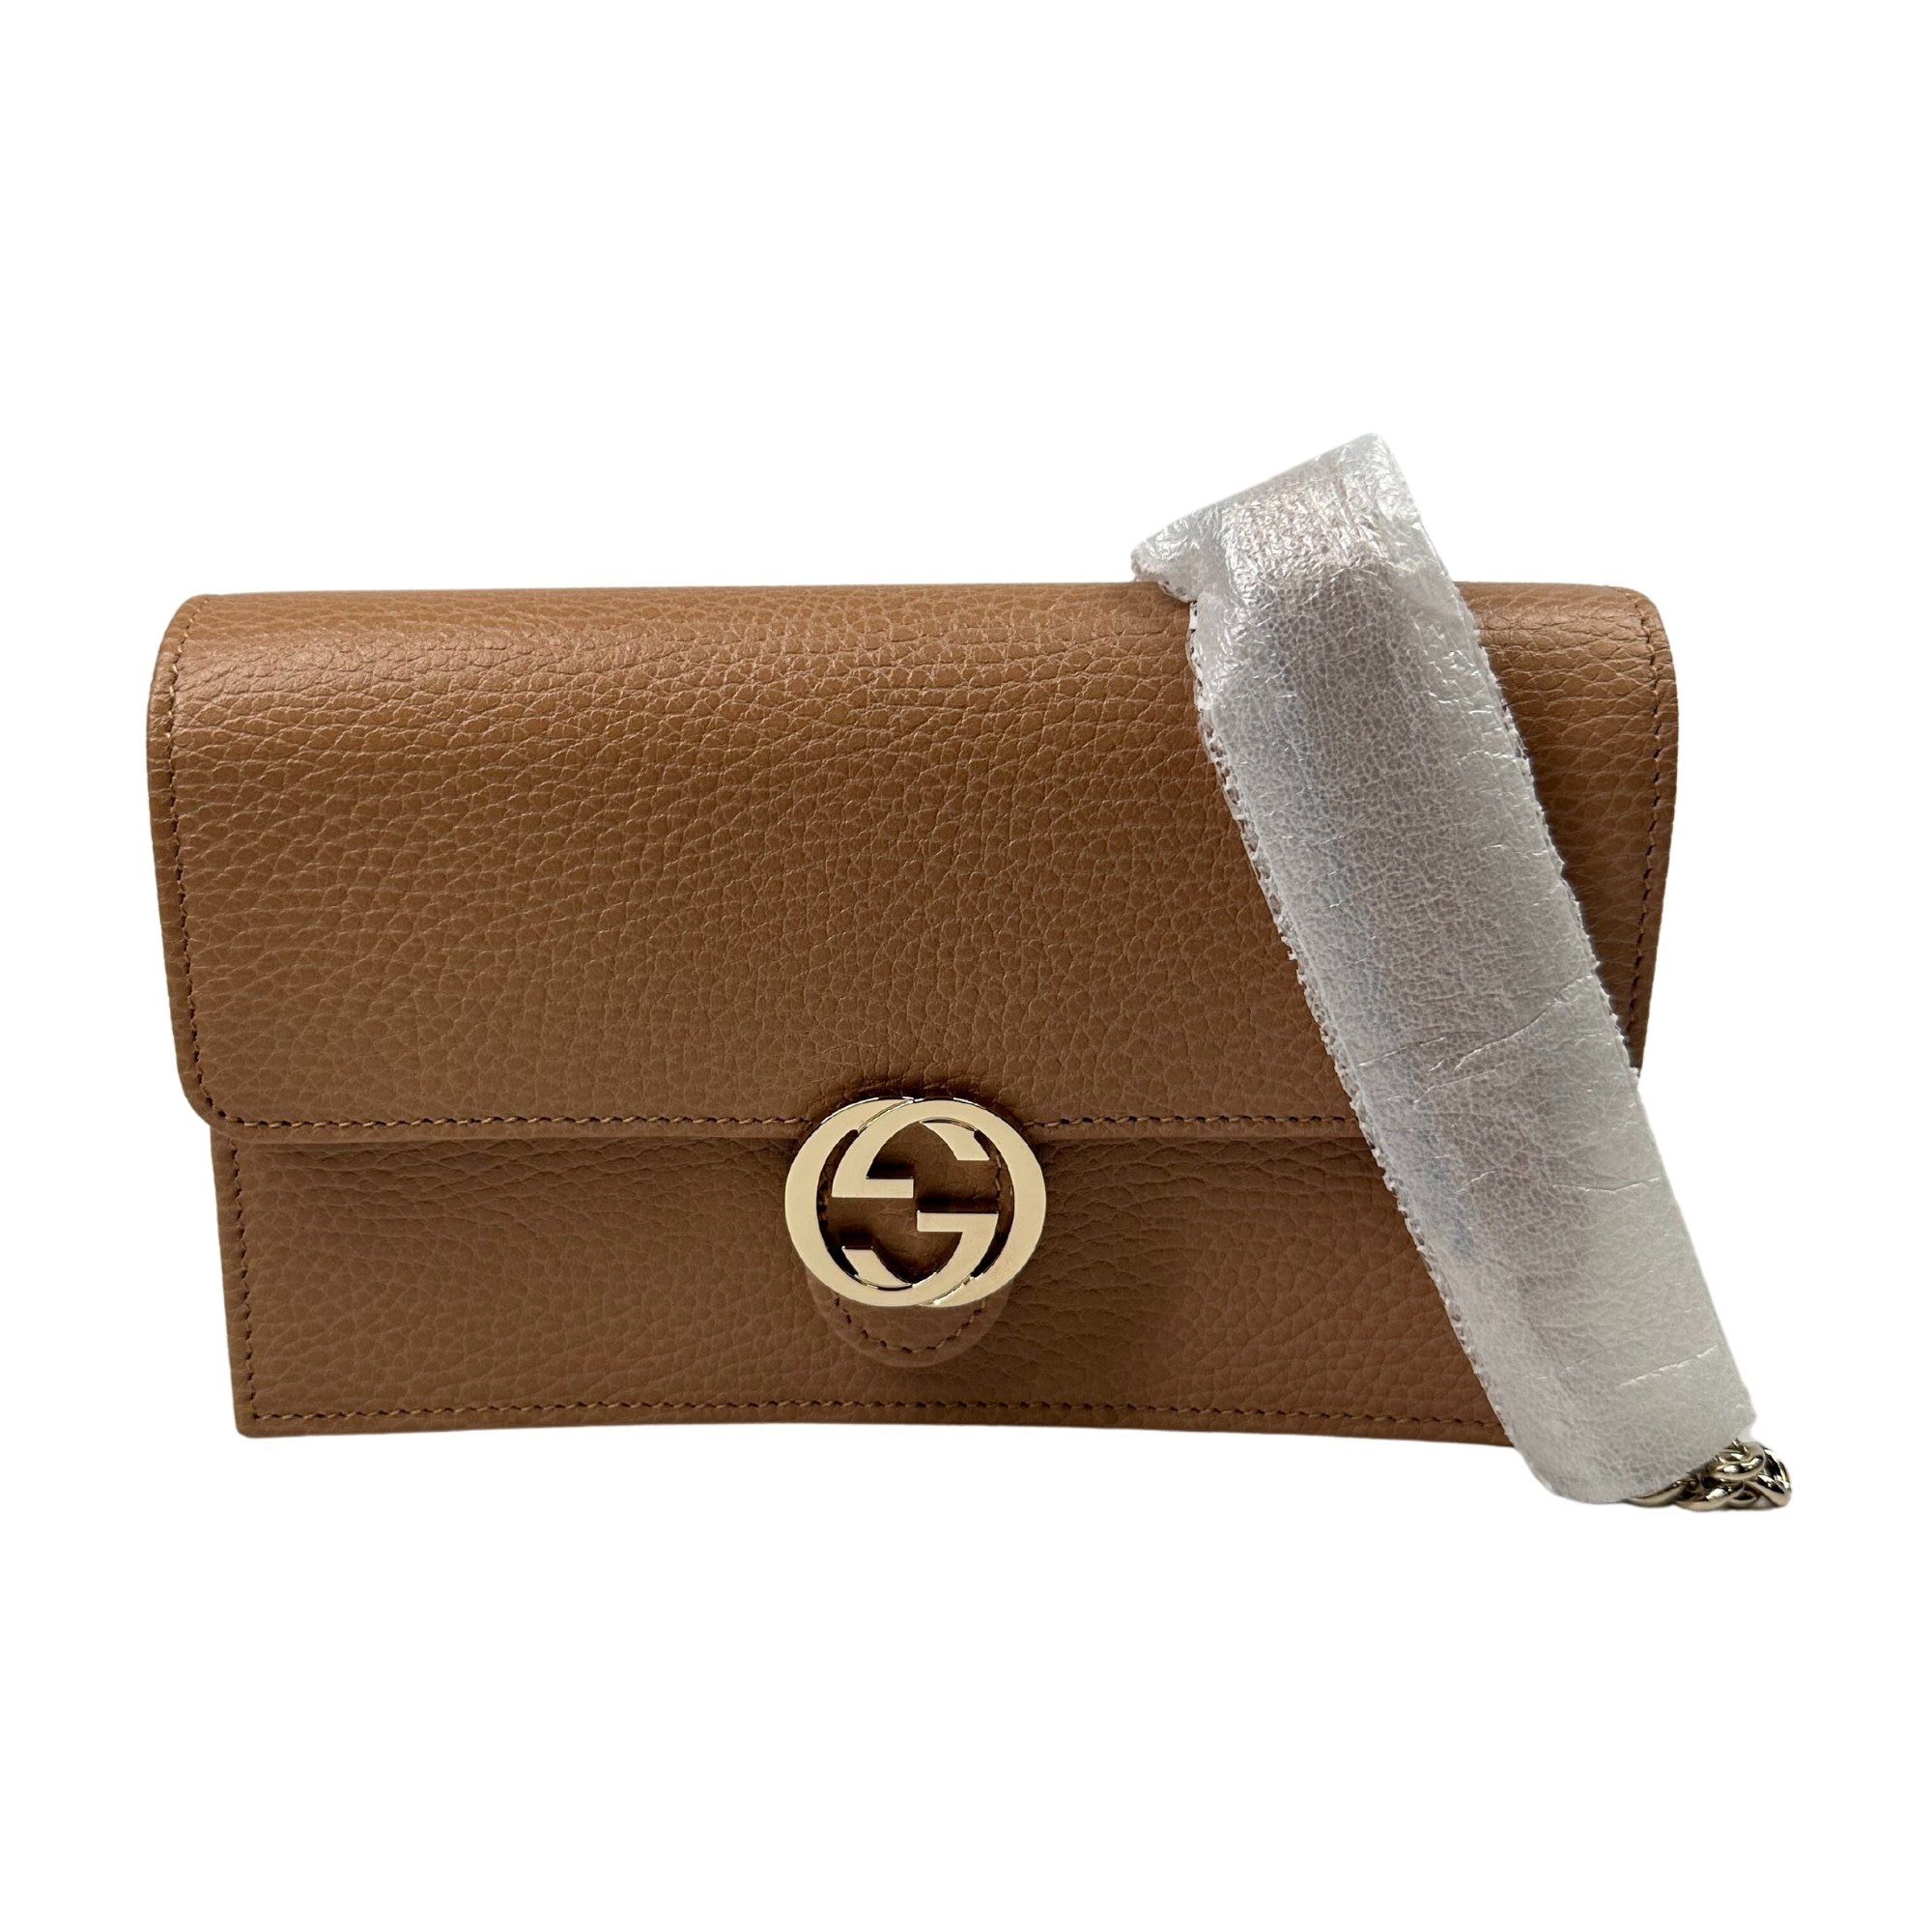 Womens Designer Gucci Interlocking GG Wallet on chain Crossbody Bag Beige